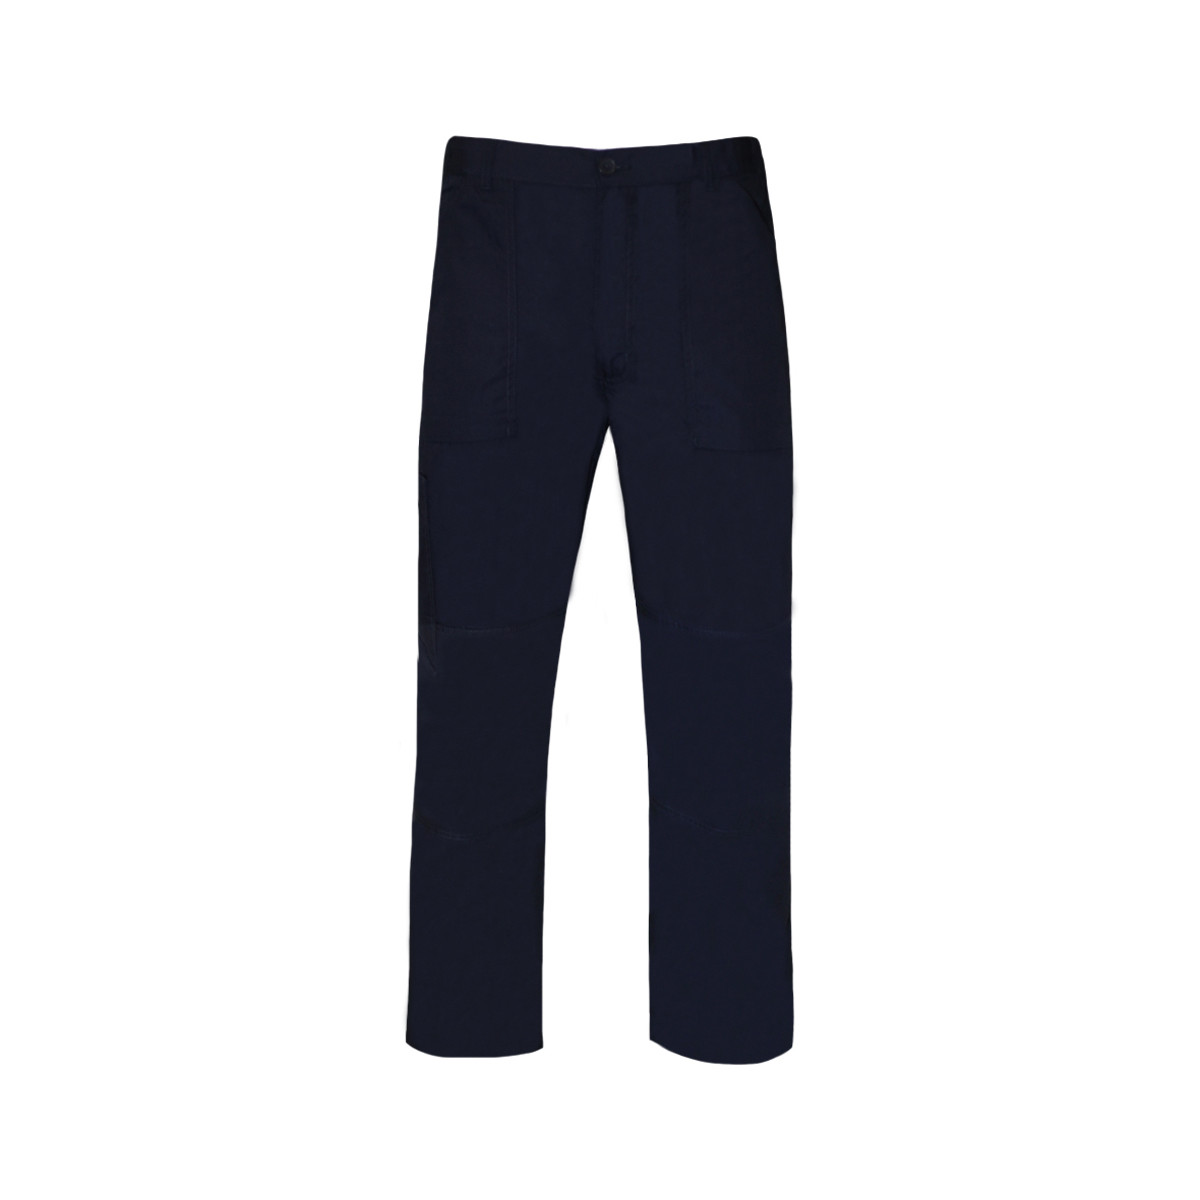 textil Hombre Pantalones de chándal Regatta TRJ330R Azul